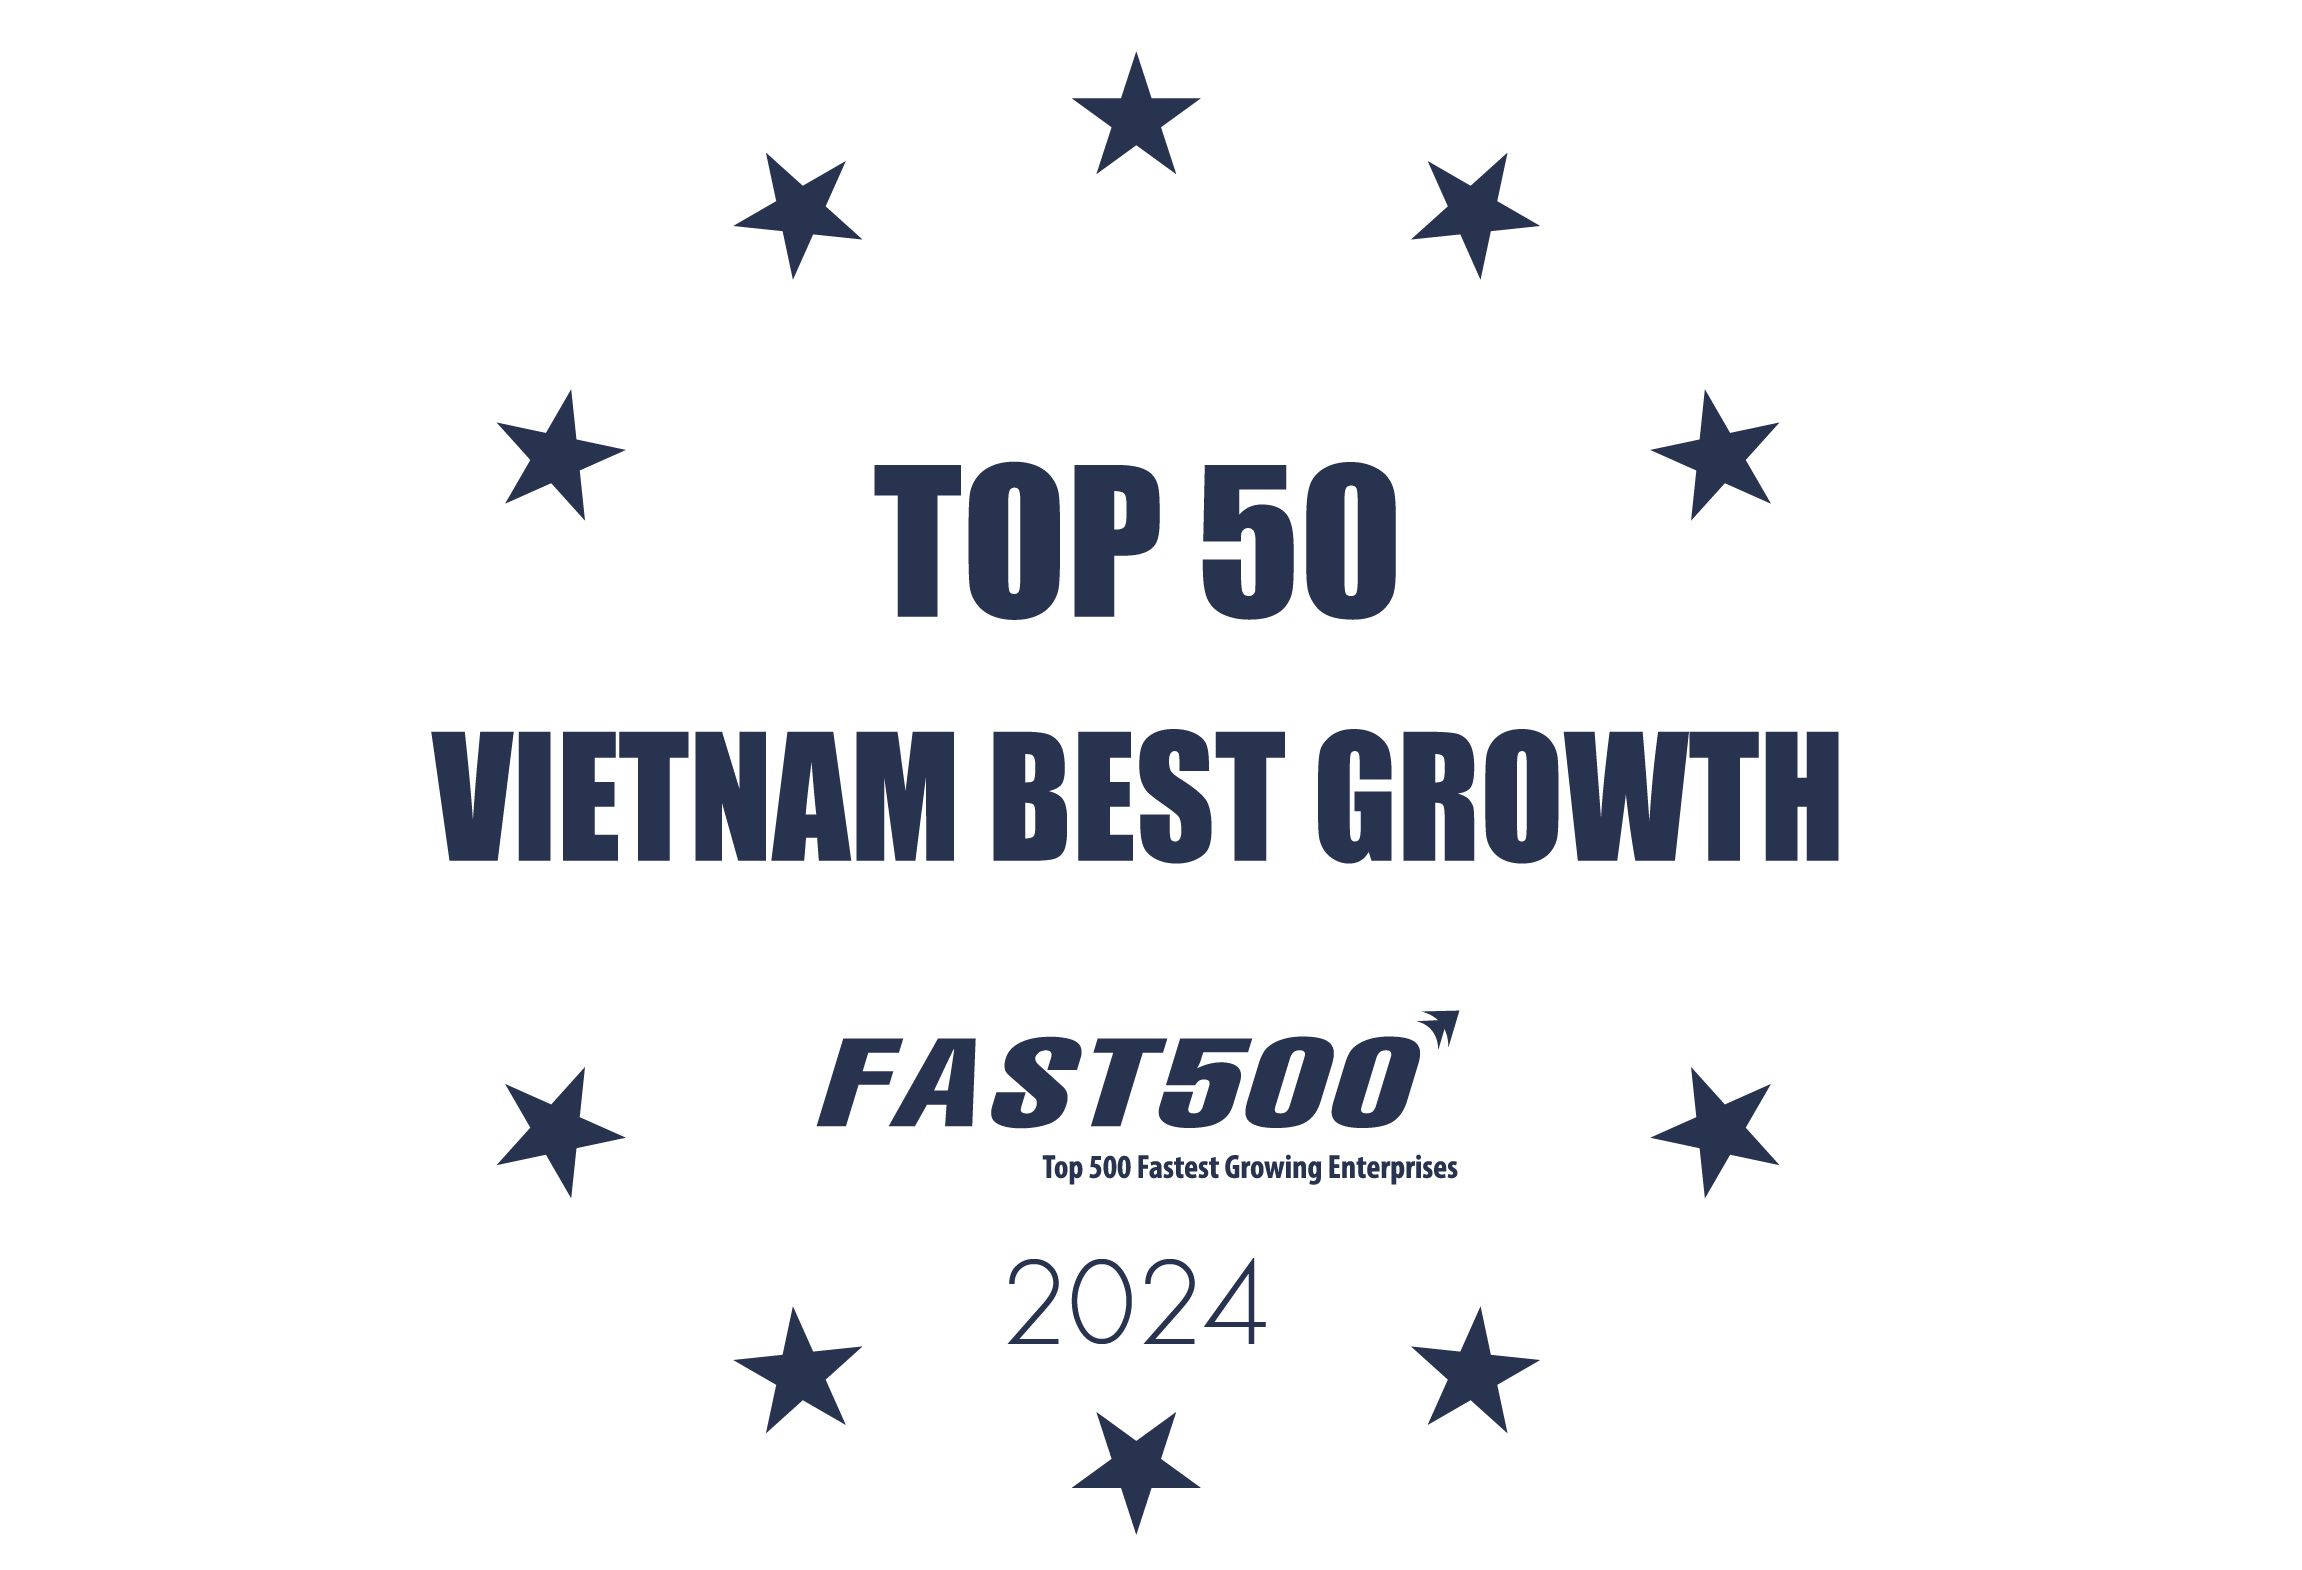 Top 50 doanh nghiệp tăng trưởng xuất sắc Việt Nam năm 2024